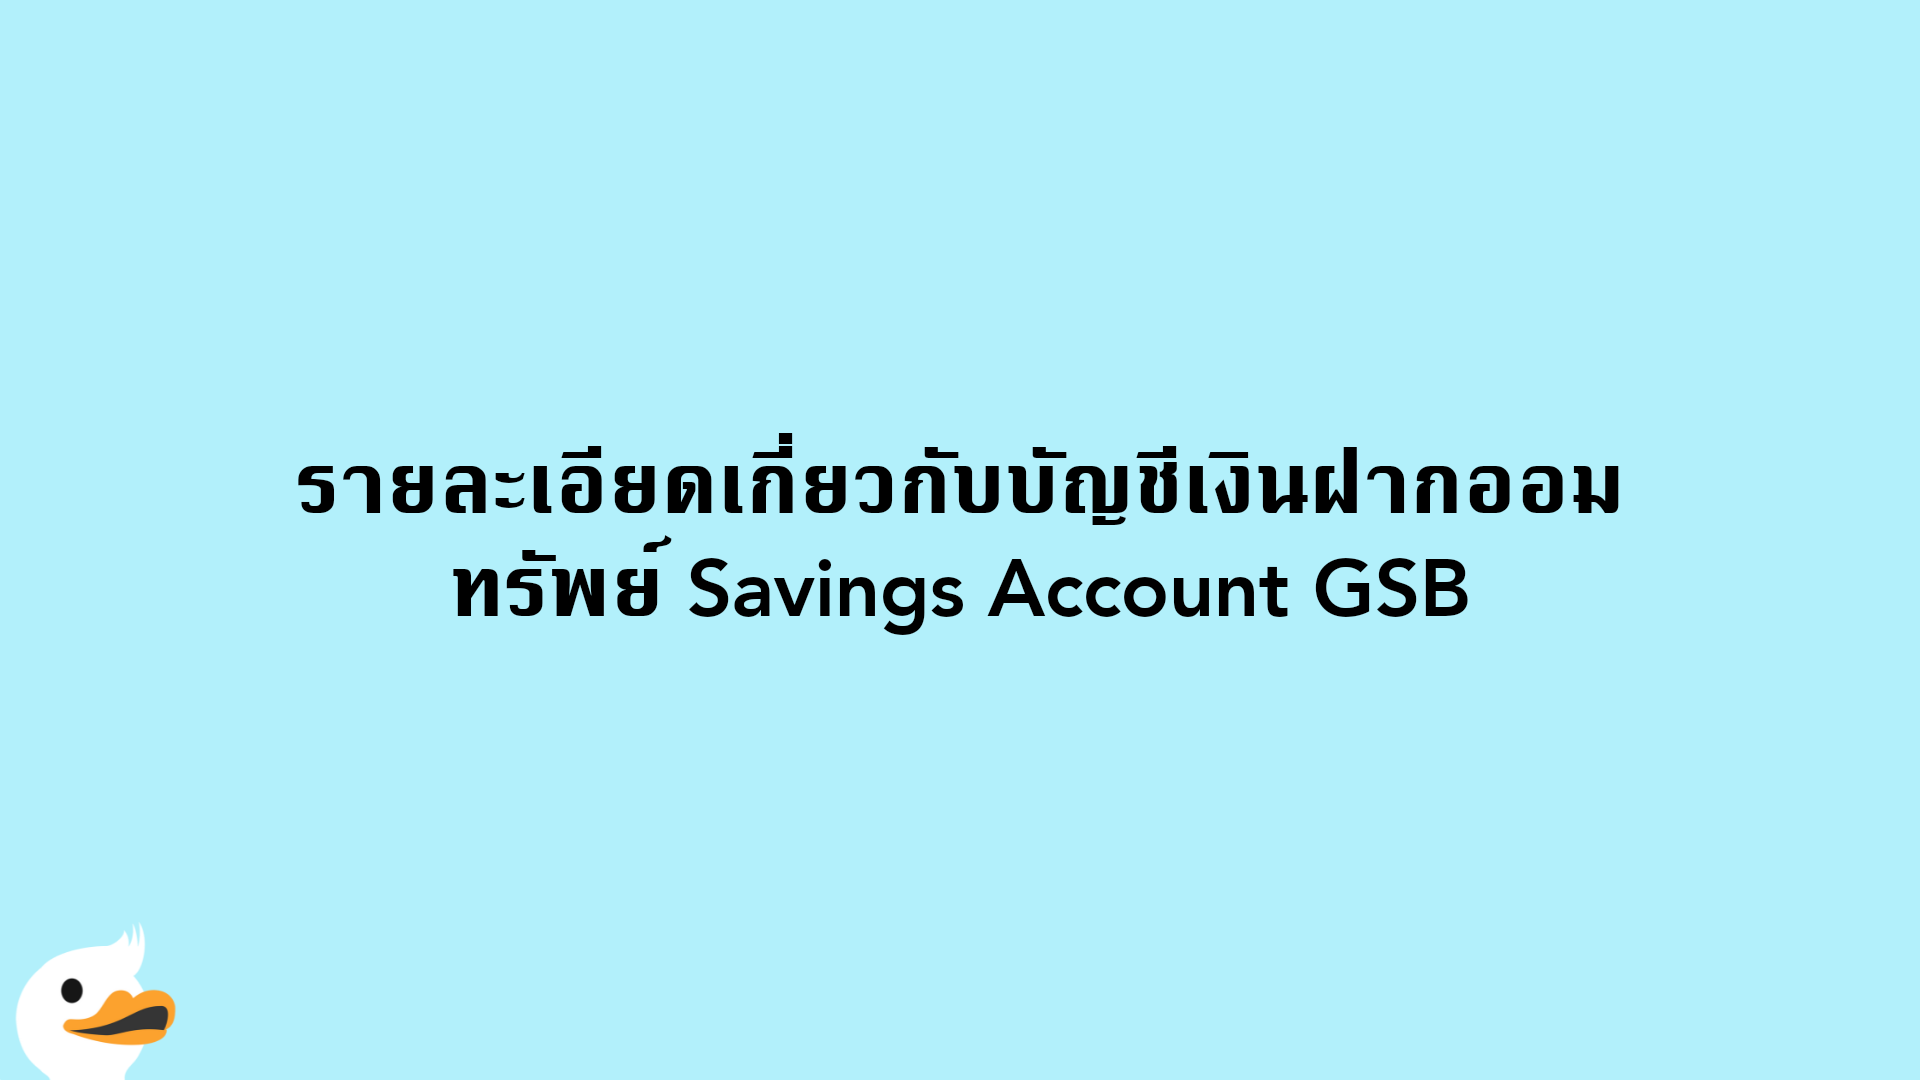 รายละเอียดเกี่ยวกับบัญชีเงินฝากออมทรัพย์ Savings Account GSB